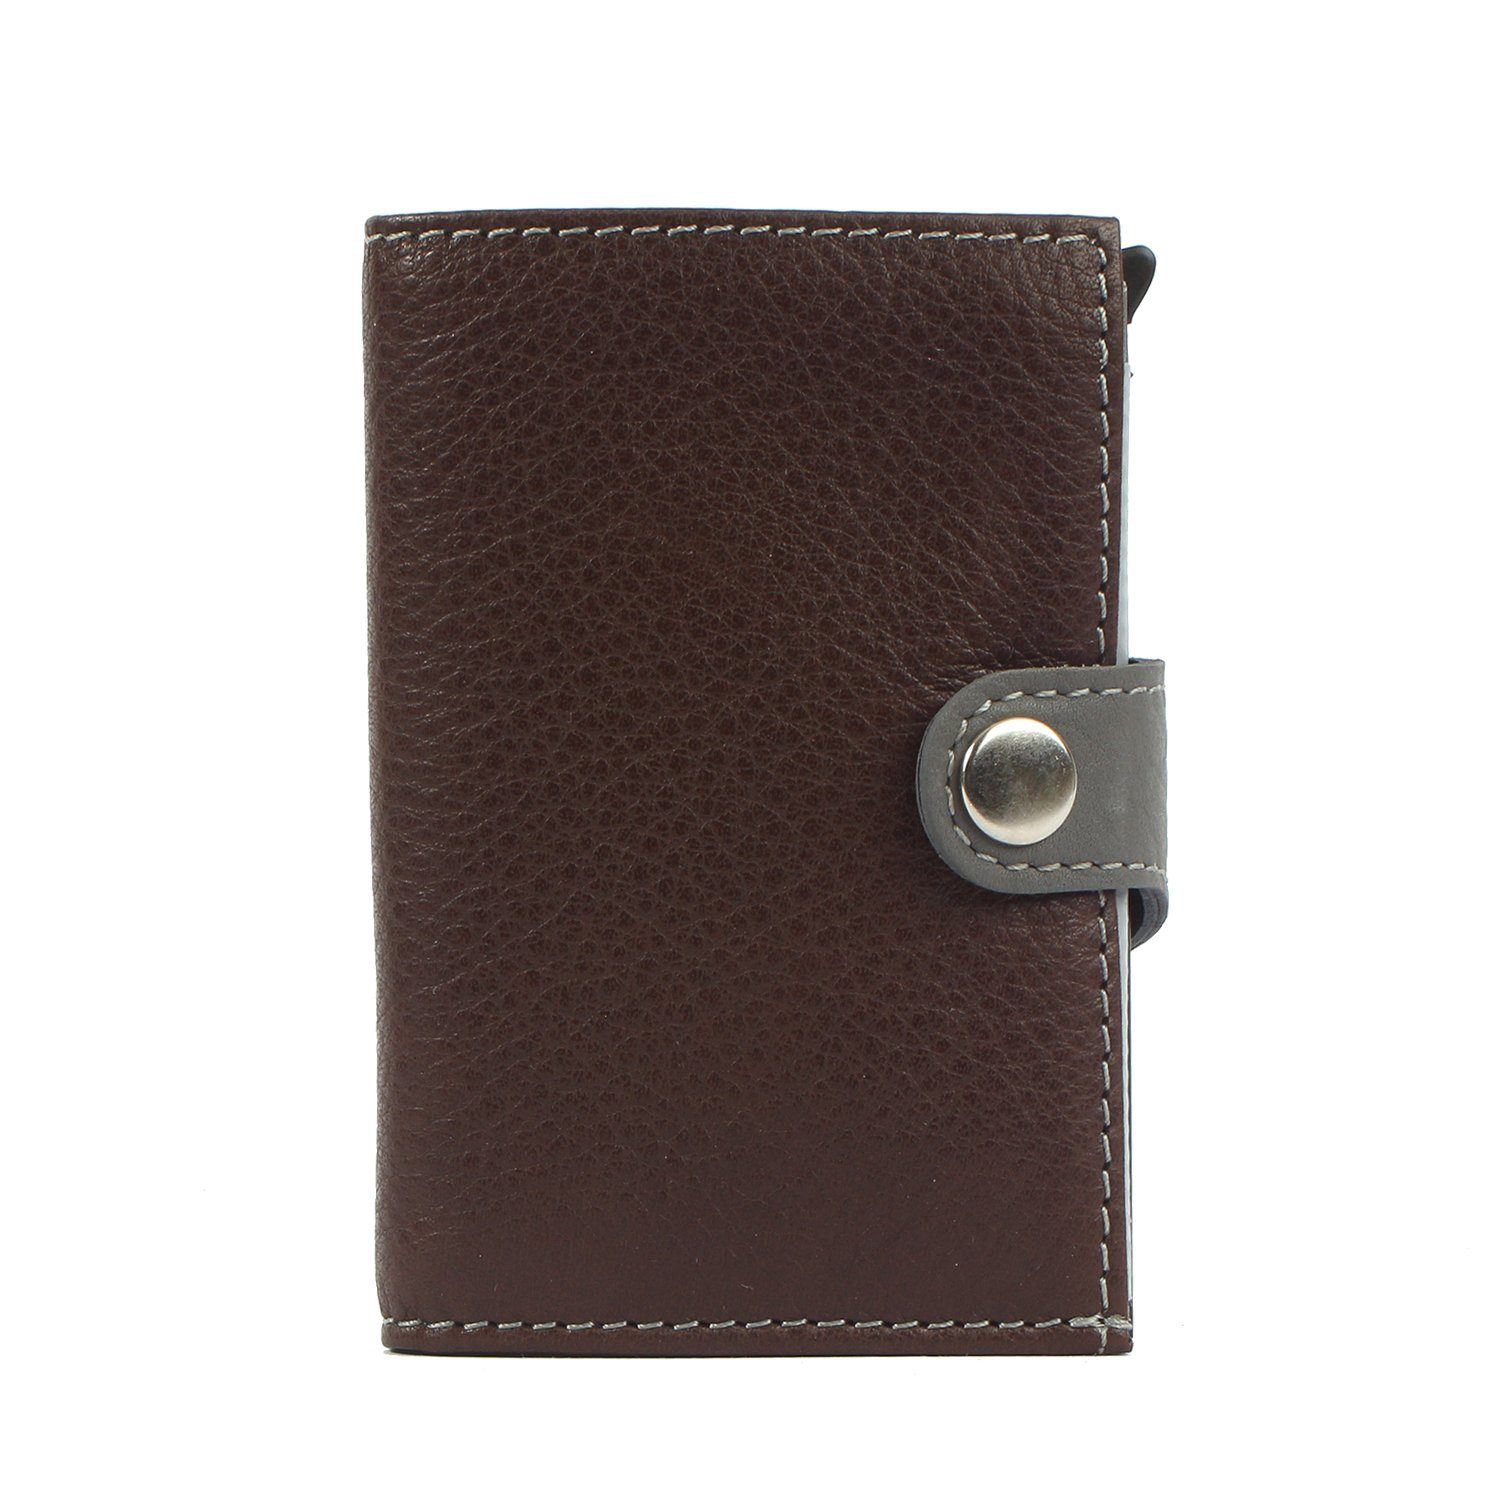 Margelisch Mini Geldbörse noonyu double Upcycling Kreditkartenbörse leather, RFID Leder darkbrown aus